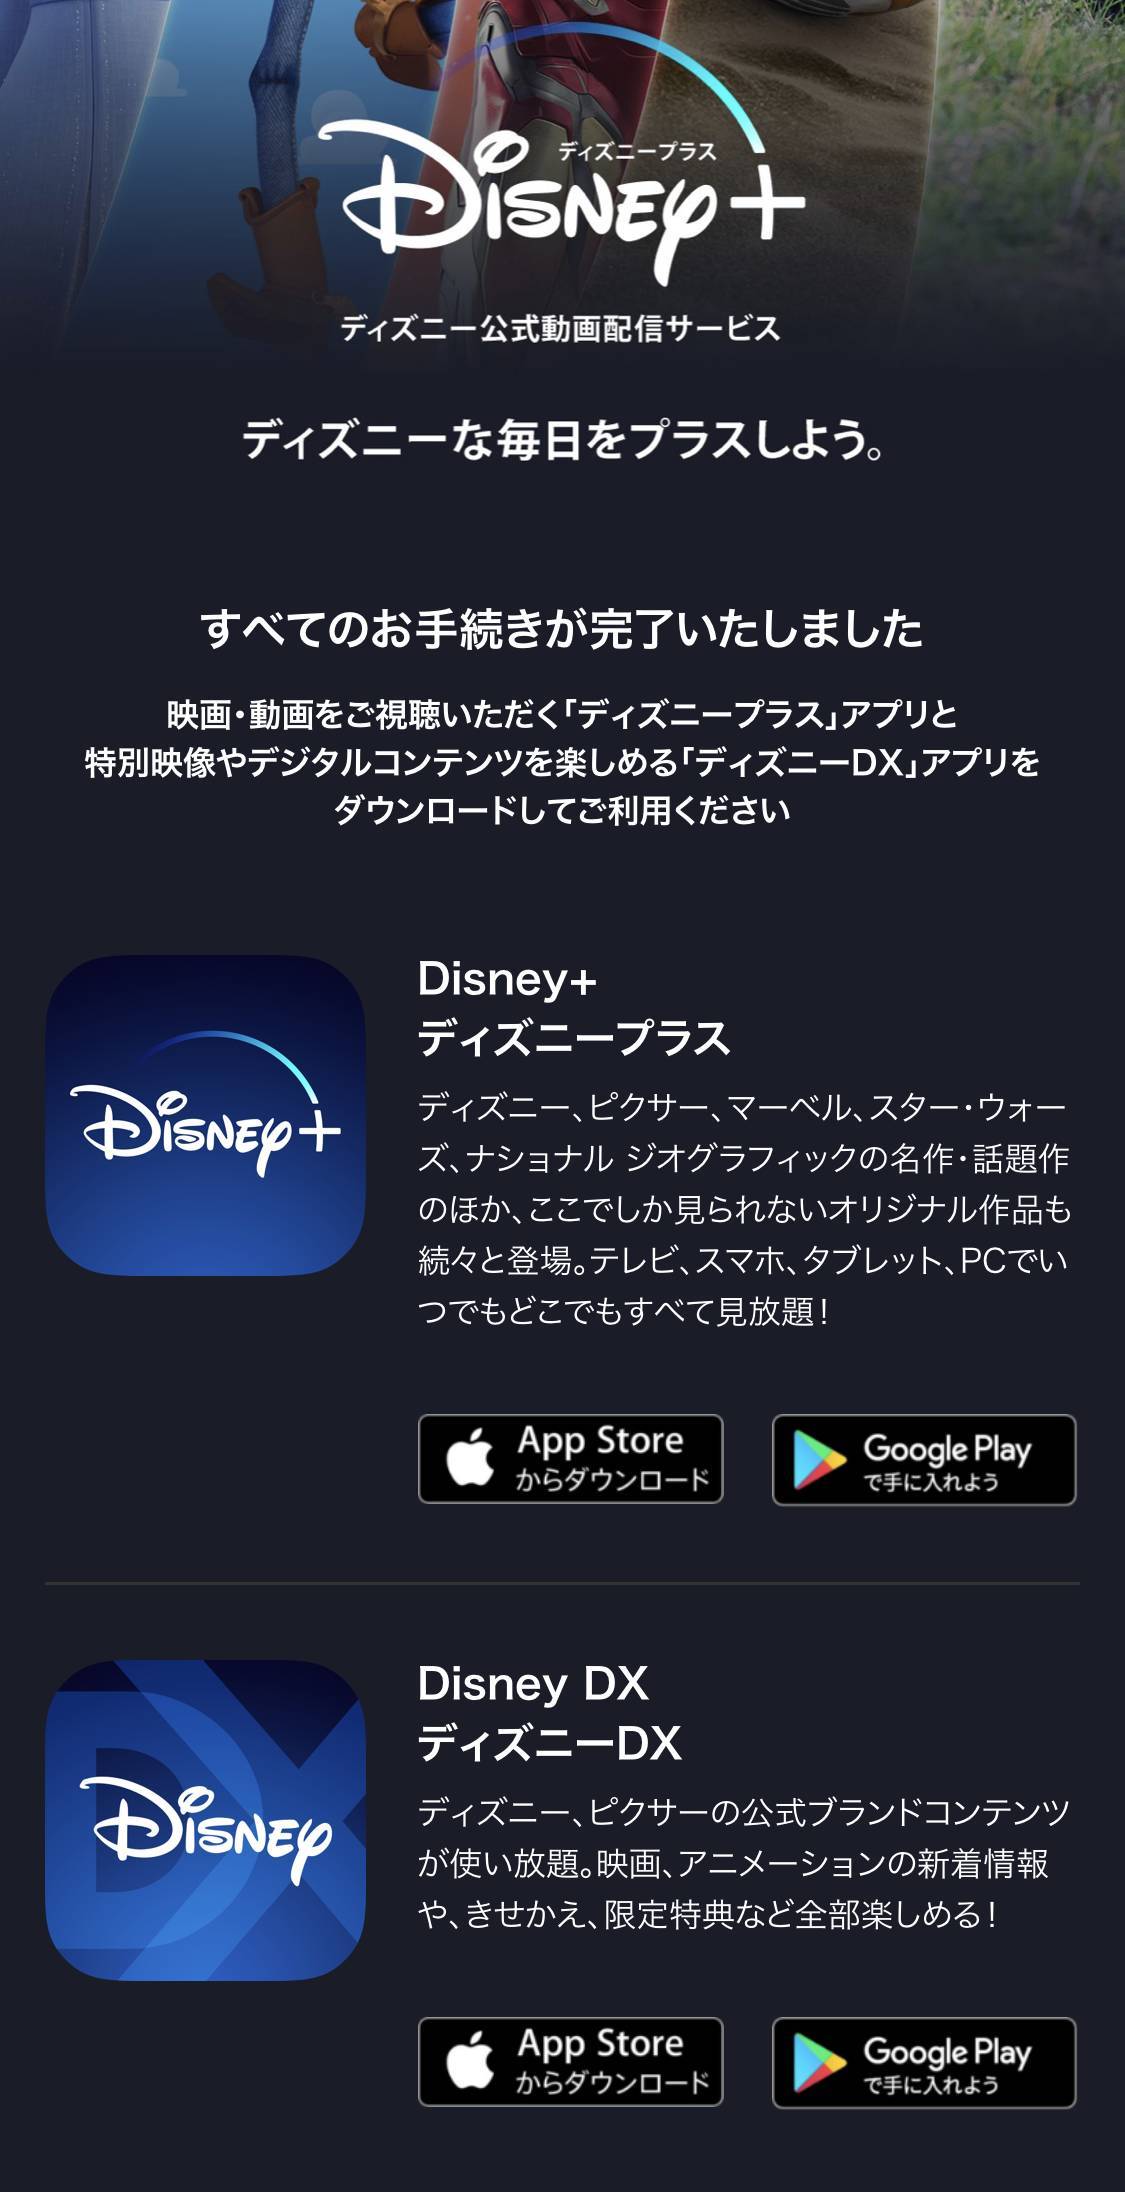 Disney ディズニープラス 登録 入会方法 Dアカウントの作成から徹底解説 Appliv Topics